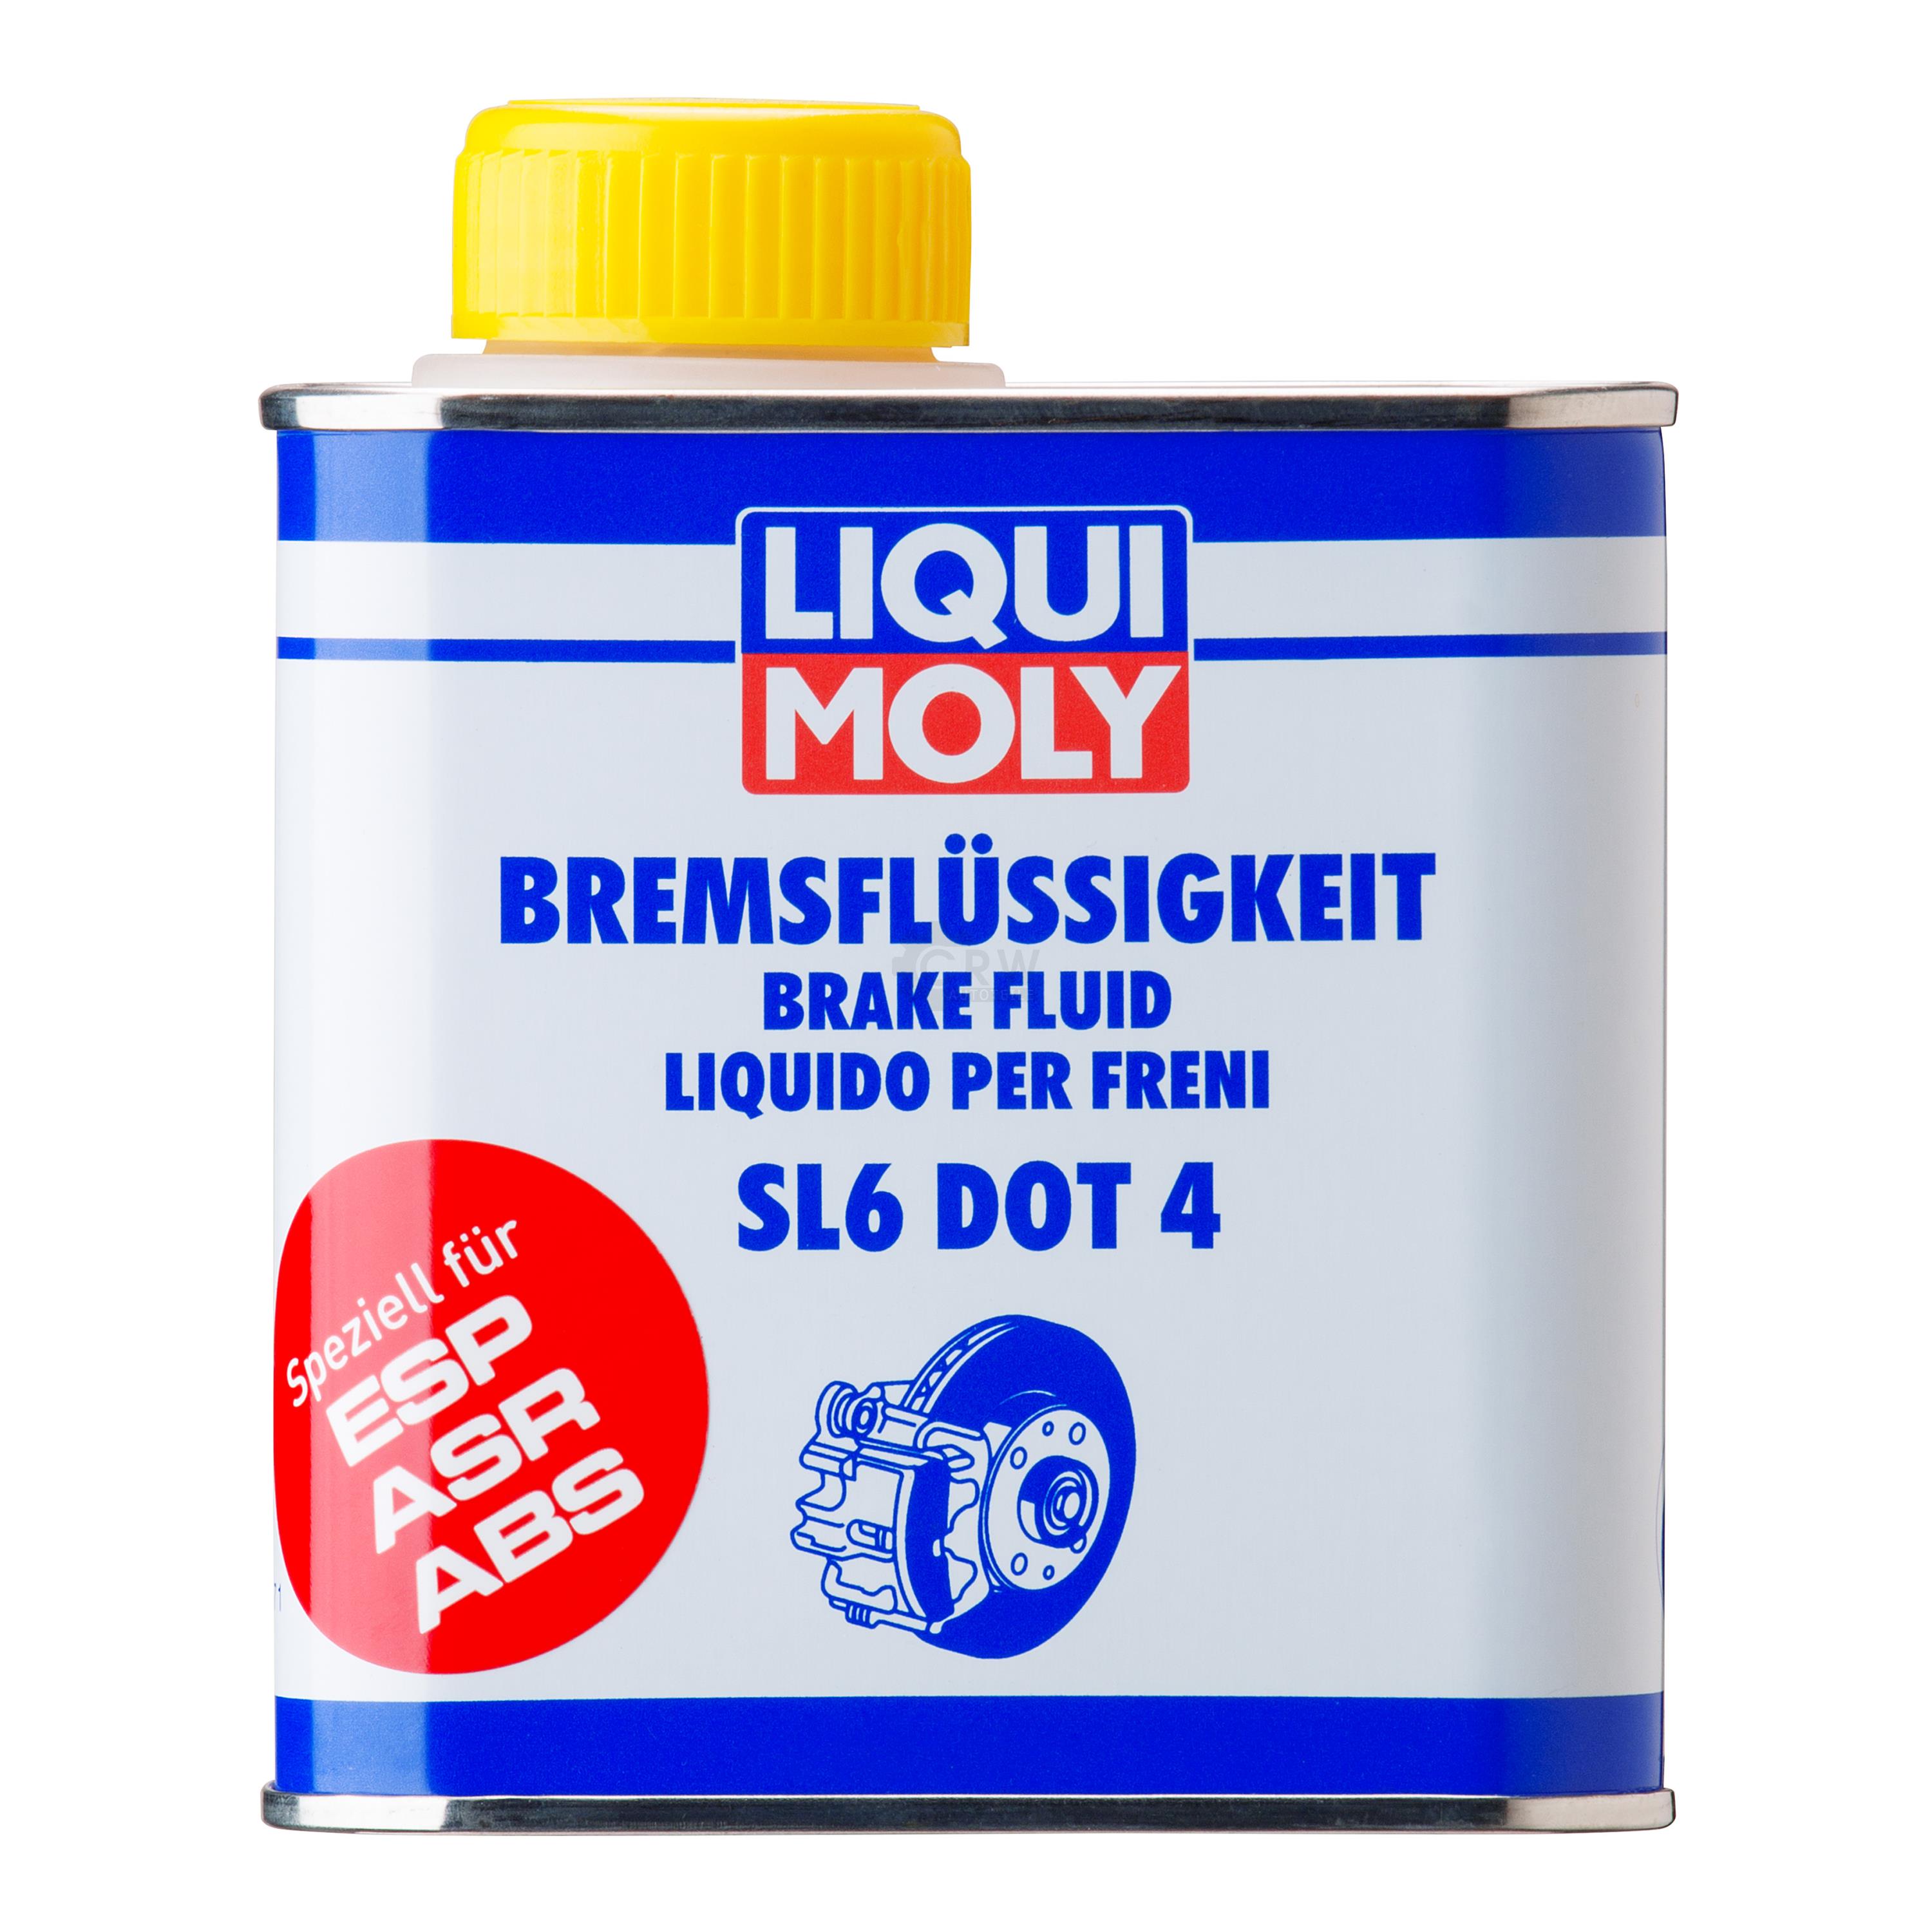 Liqui Moly Bremsflüssigkeit SL6 DOT 4 Bremsen Flüssigkeit Brake Fluid 500 ml